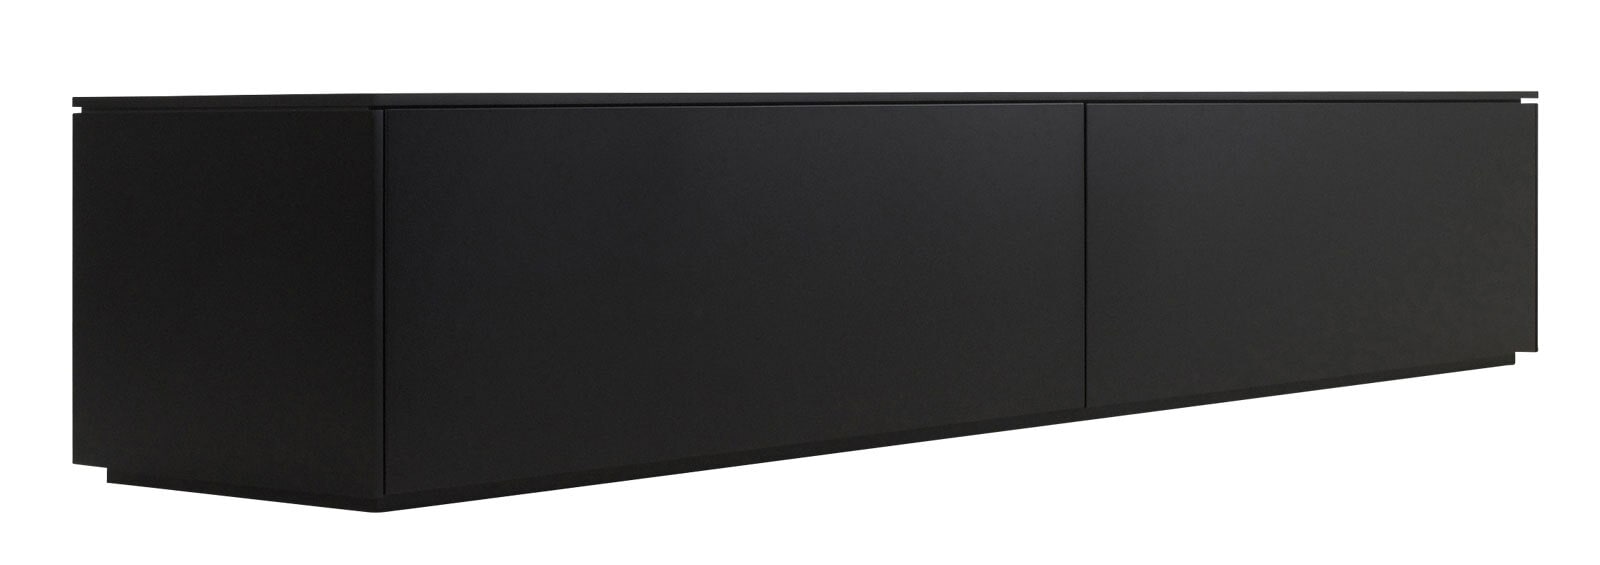 Lowboard BONO 220 x 42 cm schwarz